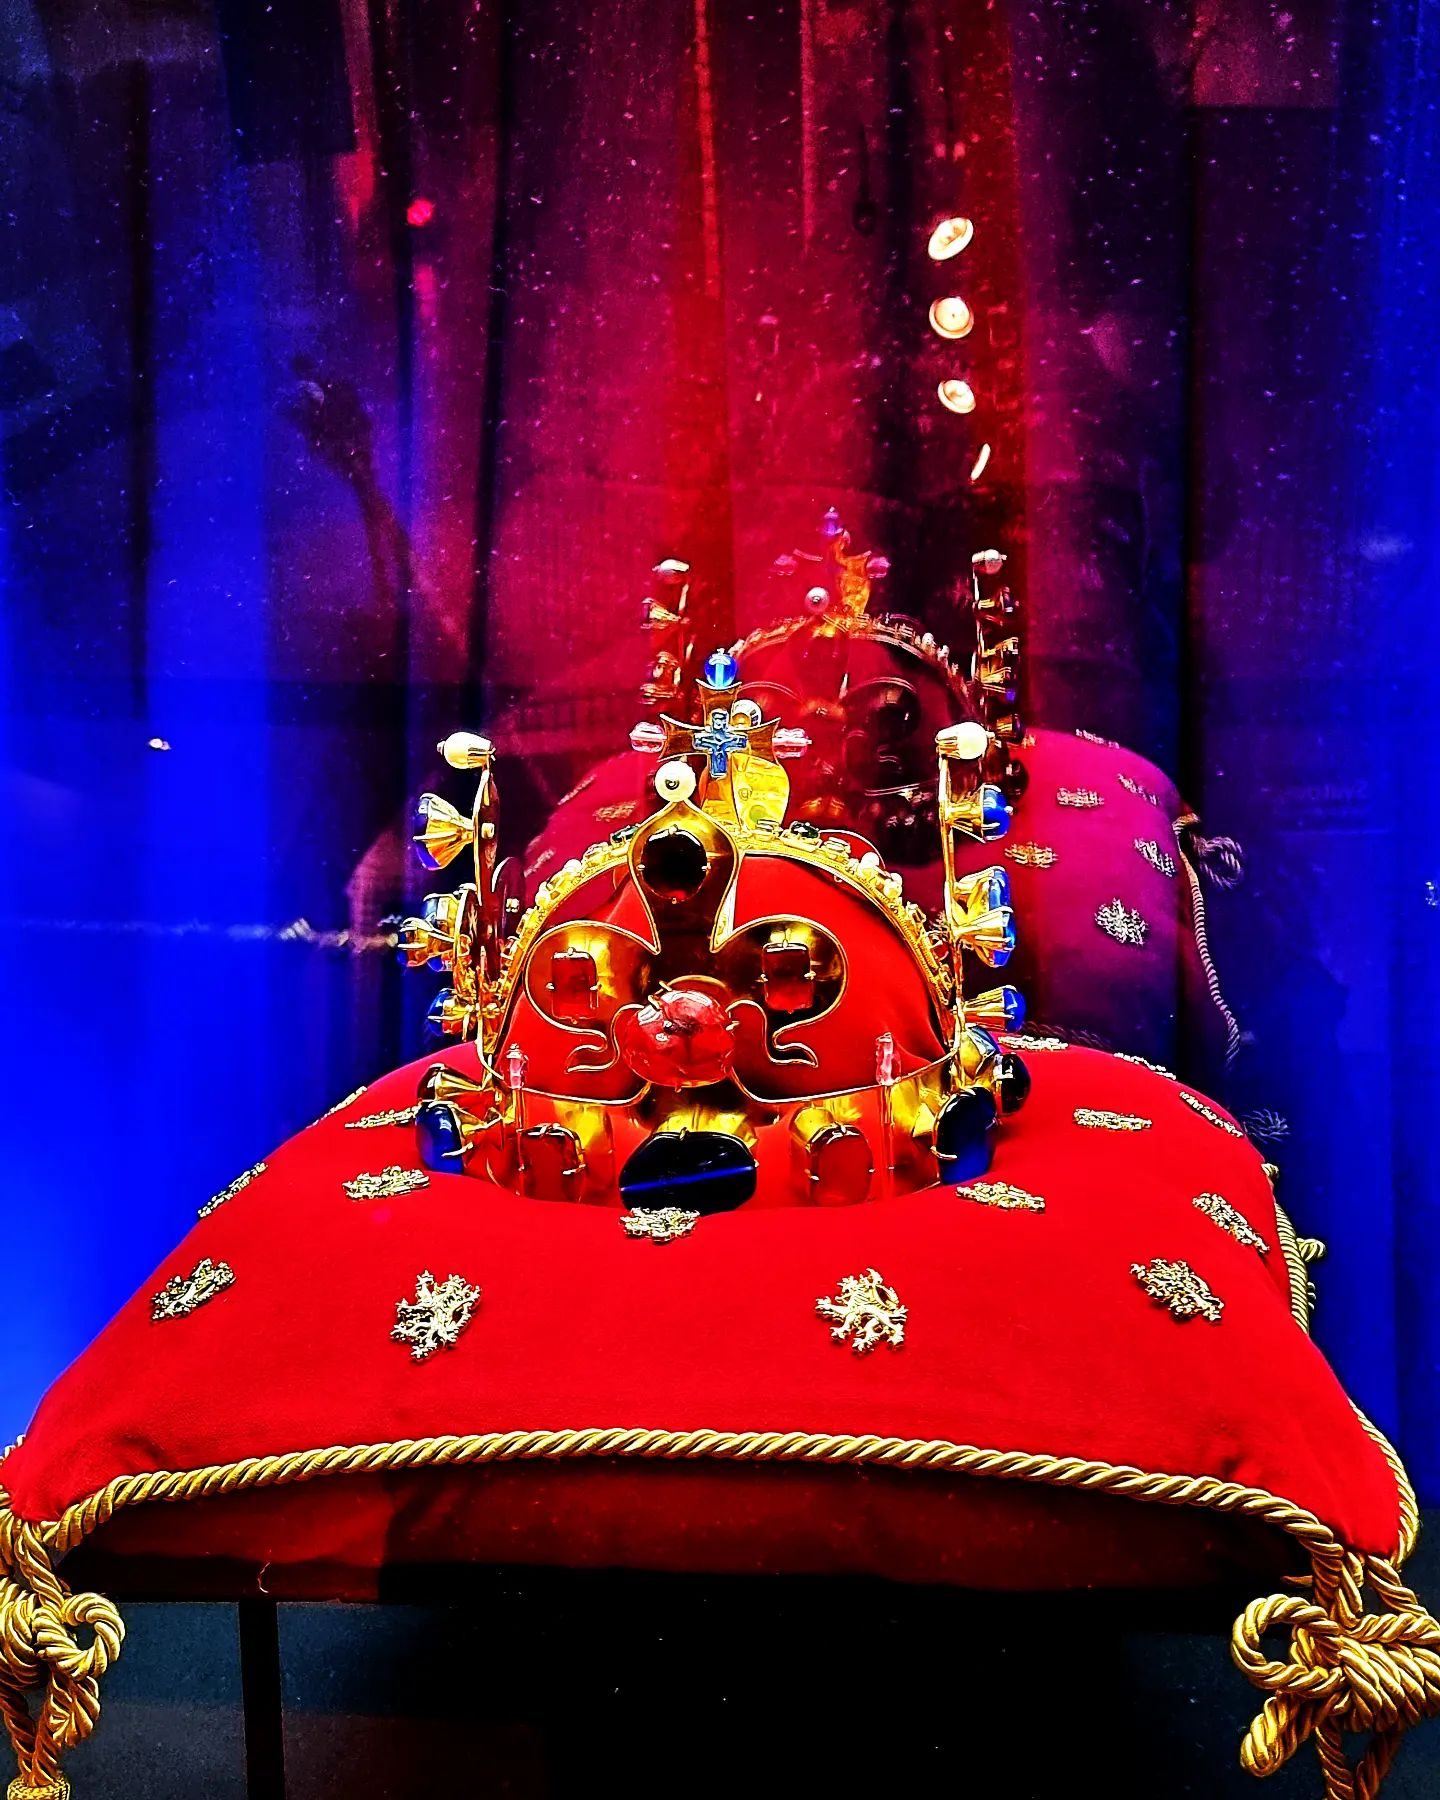 Korunovační klenoty 

Výjimečná možnost vidět korunovační klenoty byla během léta na zámku v Jindřichově Hradci.
Jedna z nejstarších korunovačních insignií v Evropě, slavná Svatováclavská koruna, kterou nechal zhotovit v letech 1345–46 Karel IV., bere dech. 

#vystava #korunovacniklenoty #svatovaclavskakoruna #czech #crownjewels #crownjewel #kulturnidedictvi #krone #historie #history #praha #prag #ceskykral